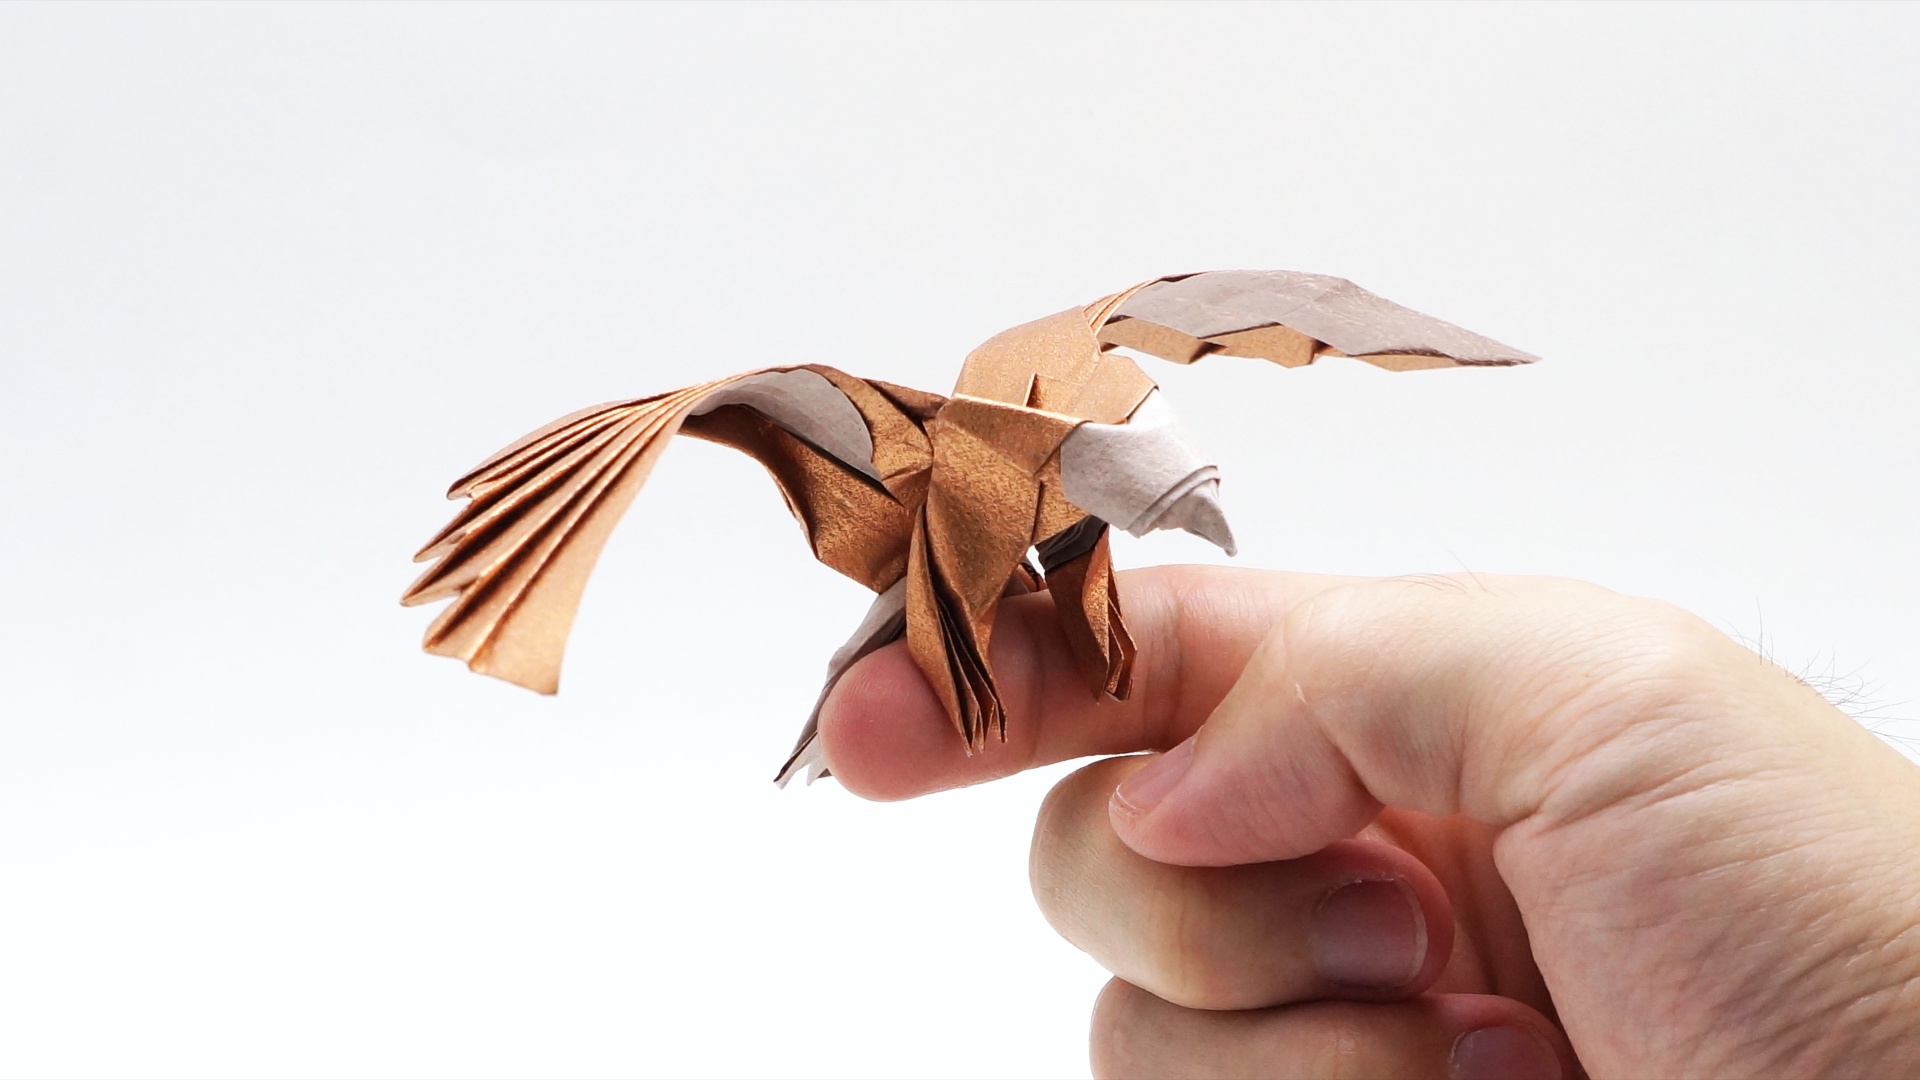 Origami Eagle: Hướng Dẫn Tạo Hình Đại Bàng Origami Đầy Mê Hoặc và Ý Nghĩa